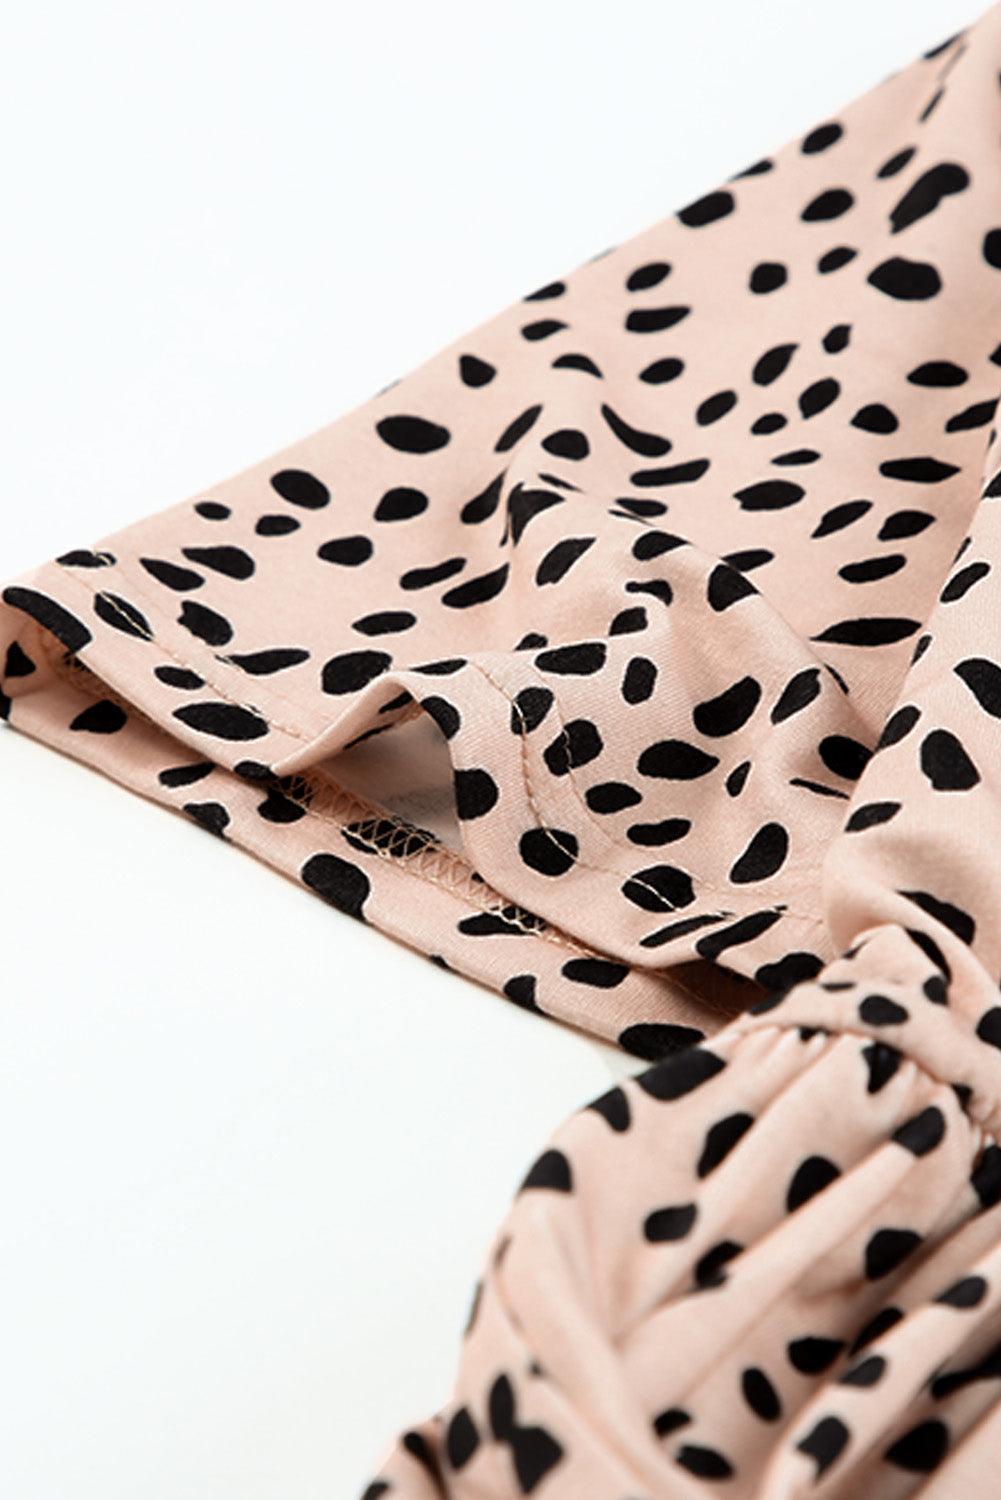 Short Sleeve Leopard Printed Summer Tunic T-shirt Dress